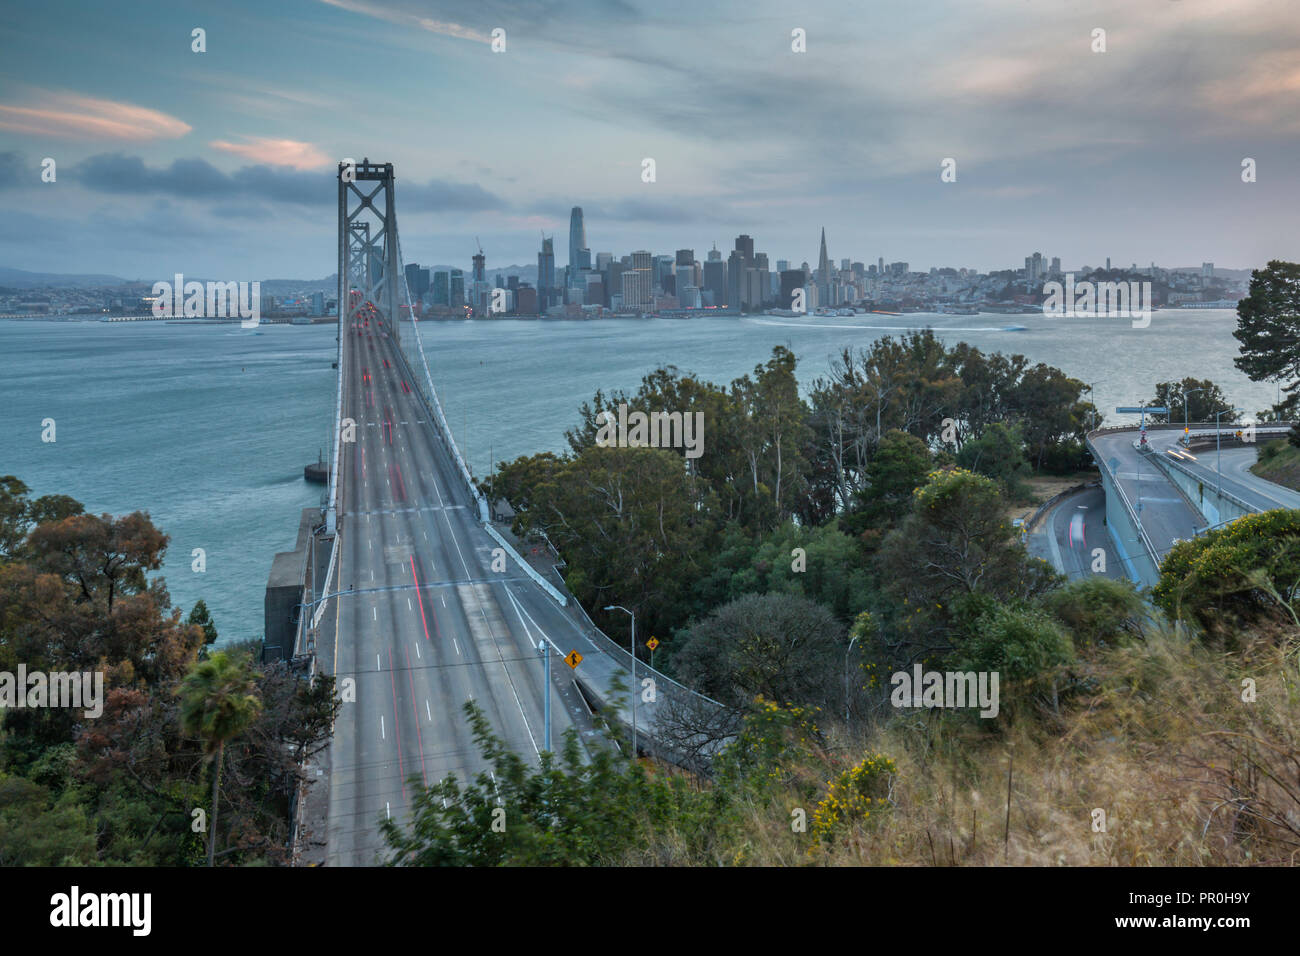 Vue d'horizon de San Francisco et Oakland Bay Bridge de Treasure Island at Dusk, San Francisco, Californie, États-Unis d'Amérique, Amérique du Nord Banque D'Images